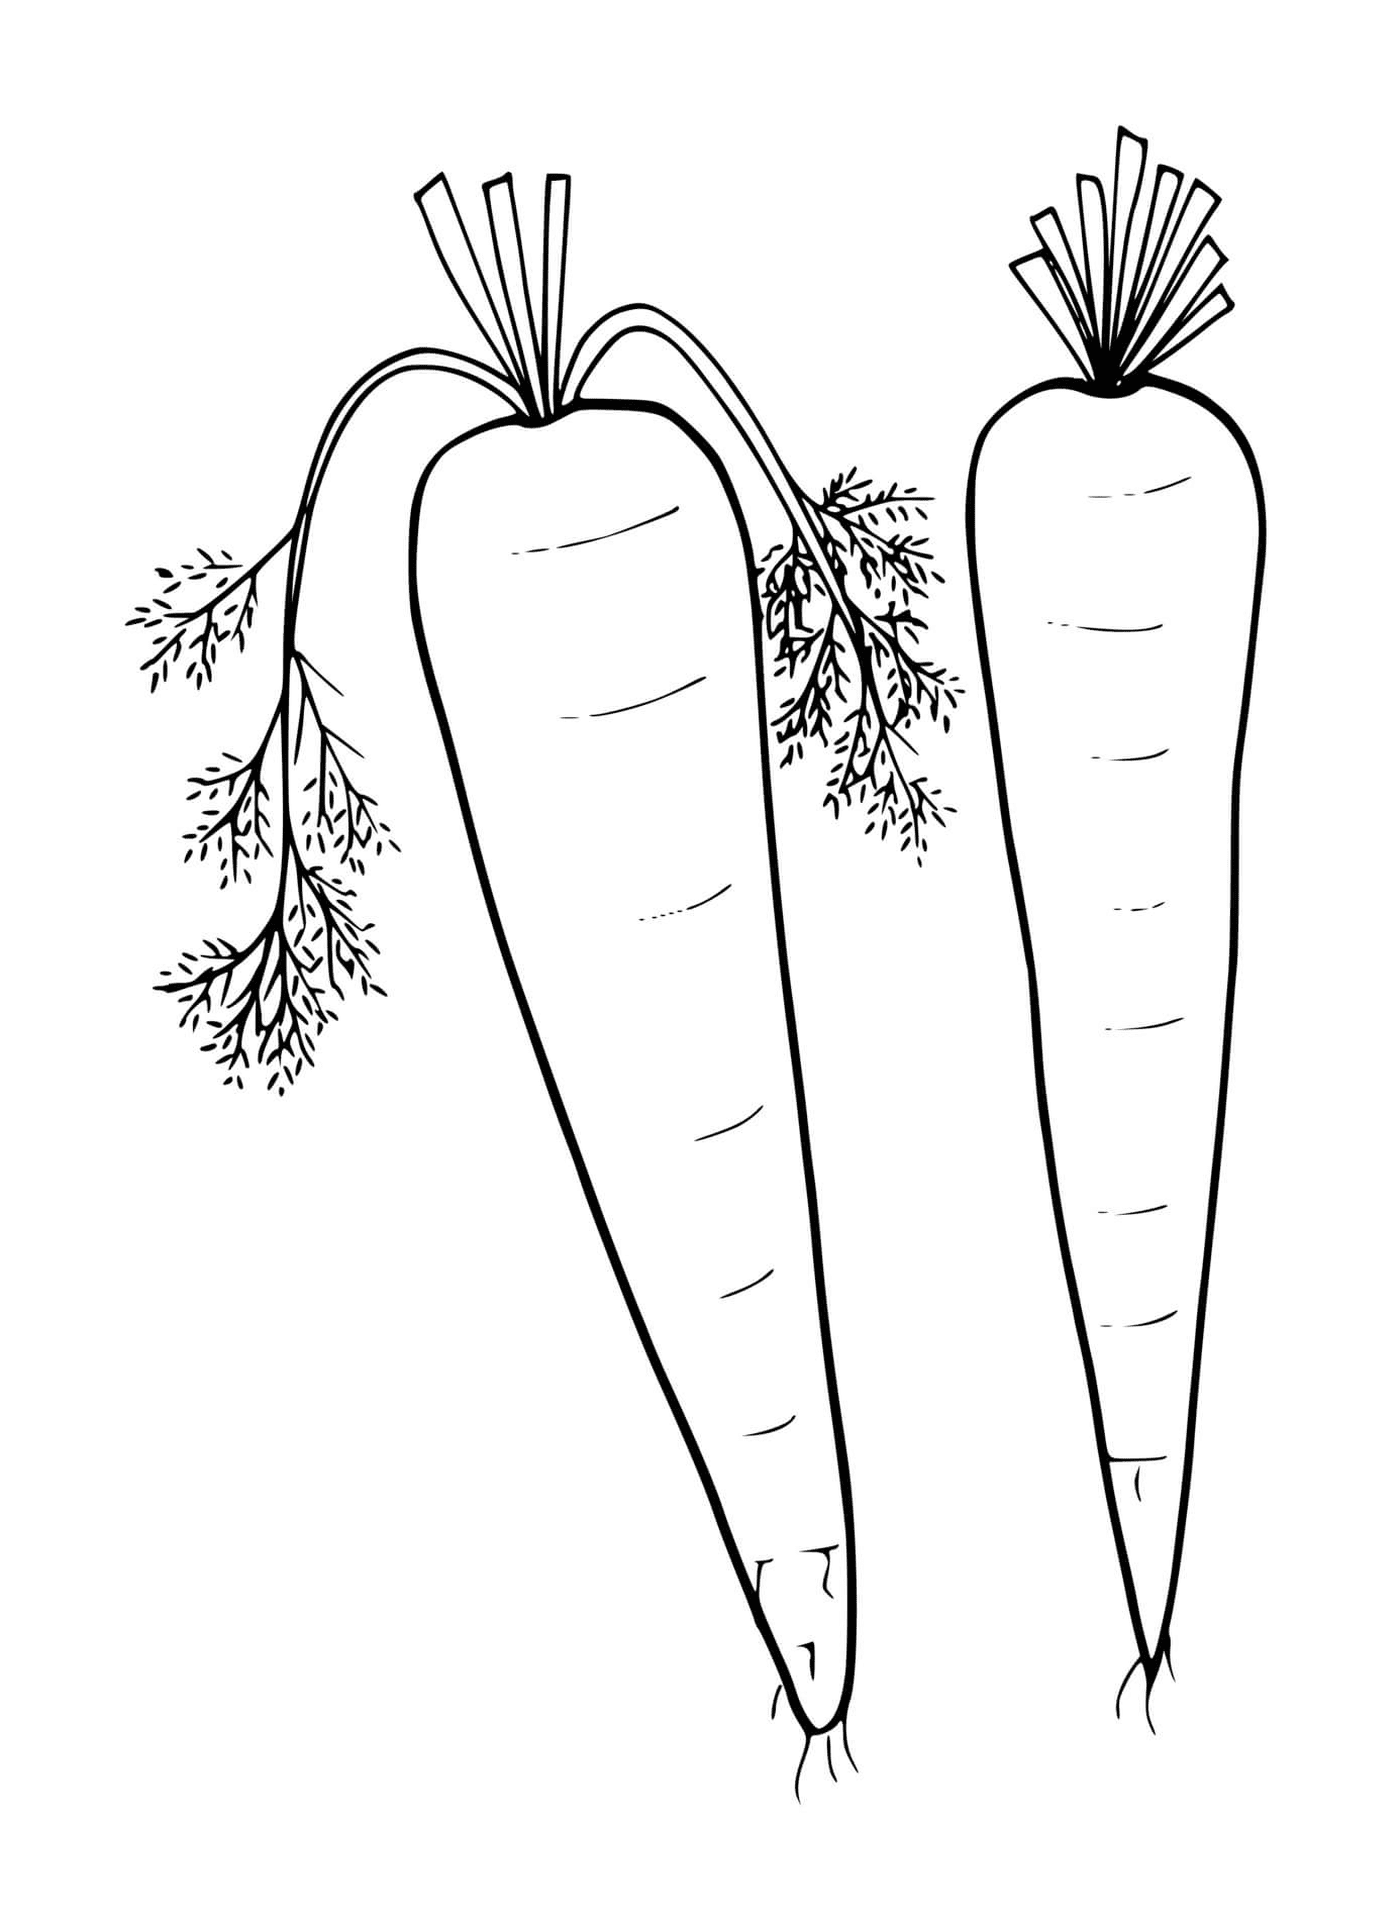   Carotte fraîche, deux carottes sur fond blanc 